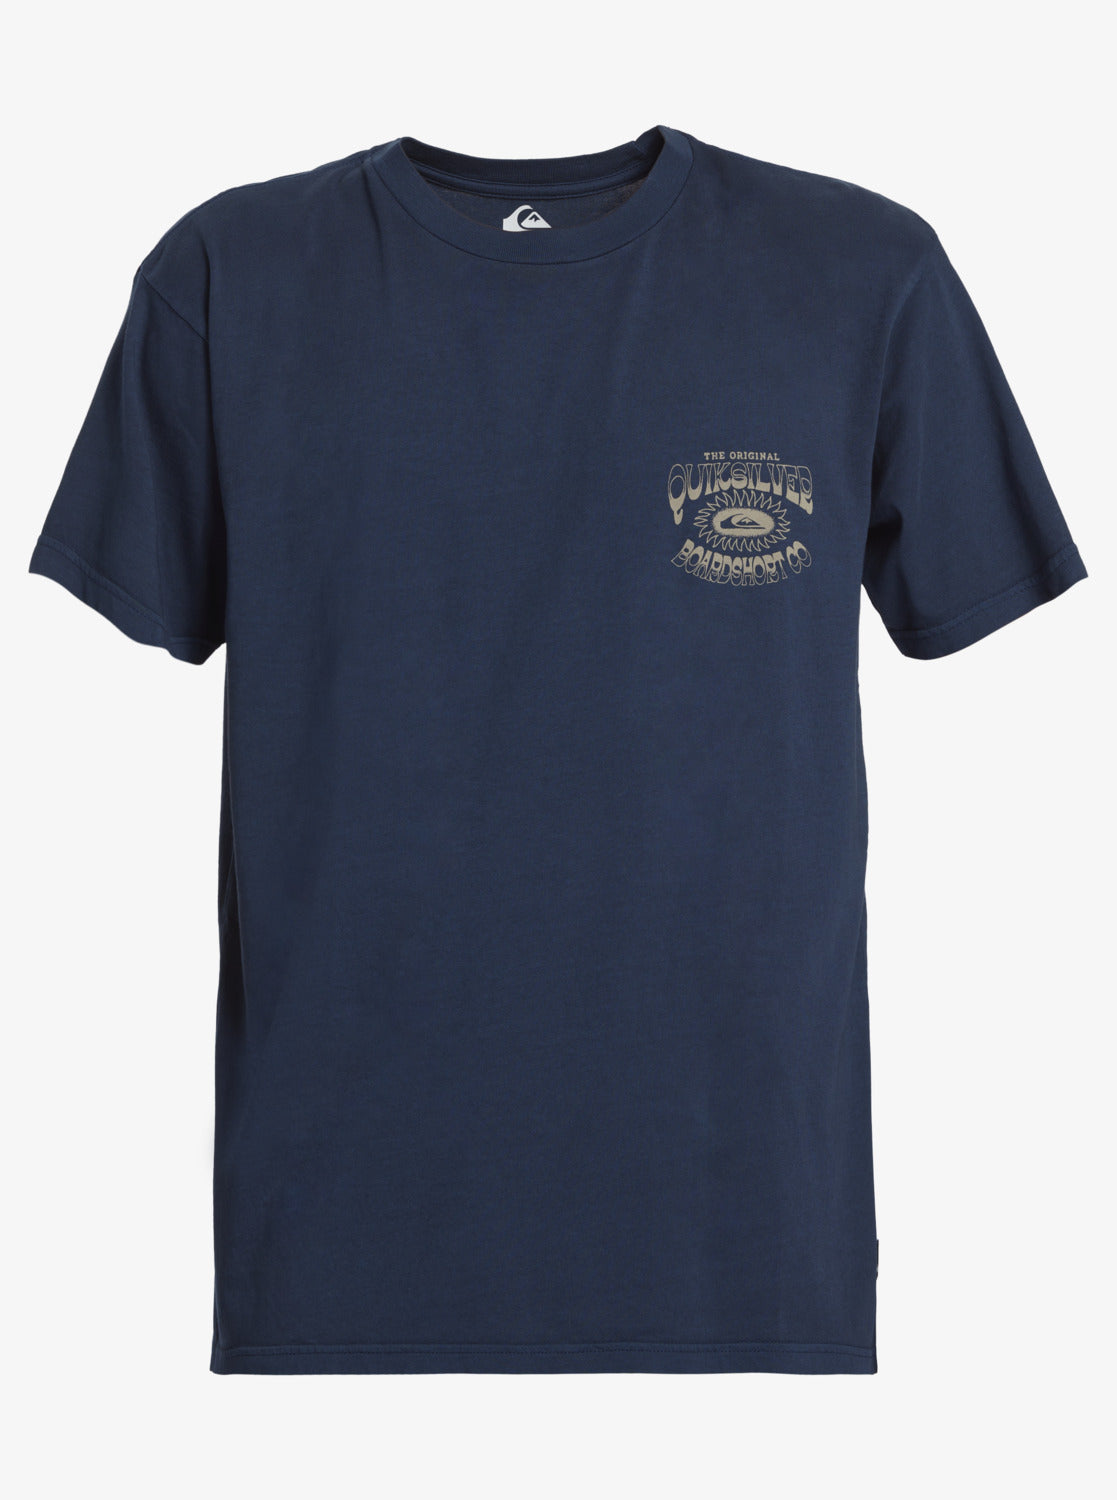 Highlight Reel Mtz T-Shirt - Midnight Navy